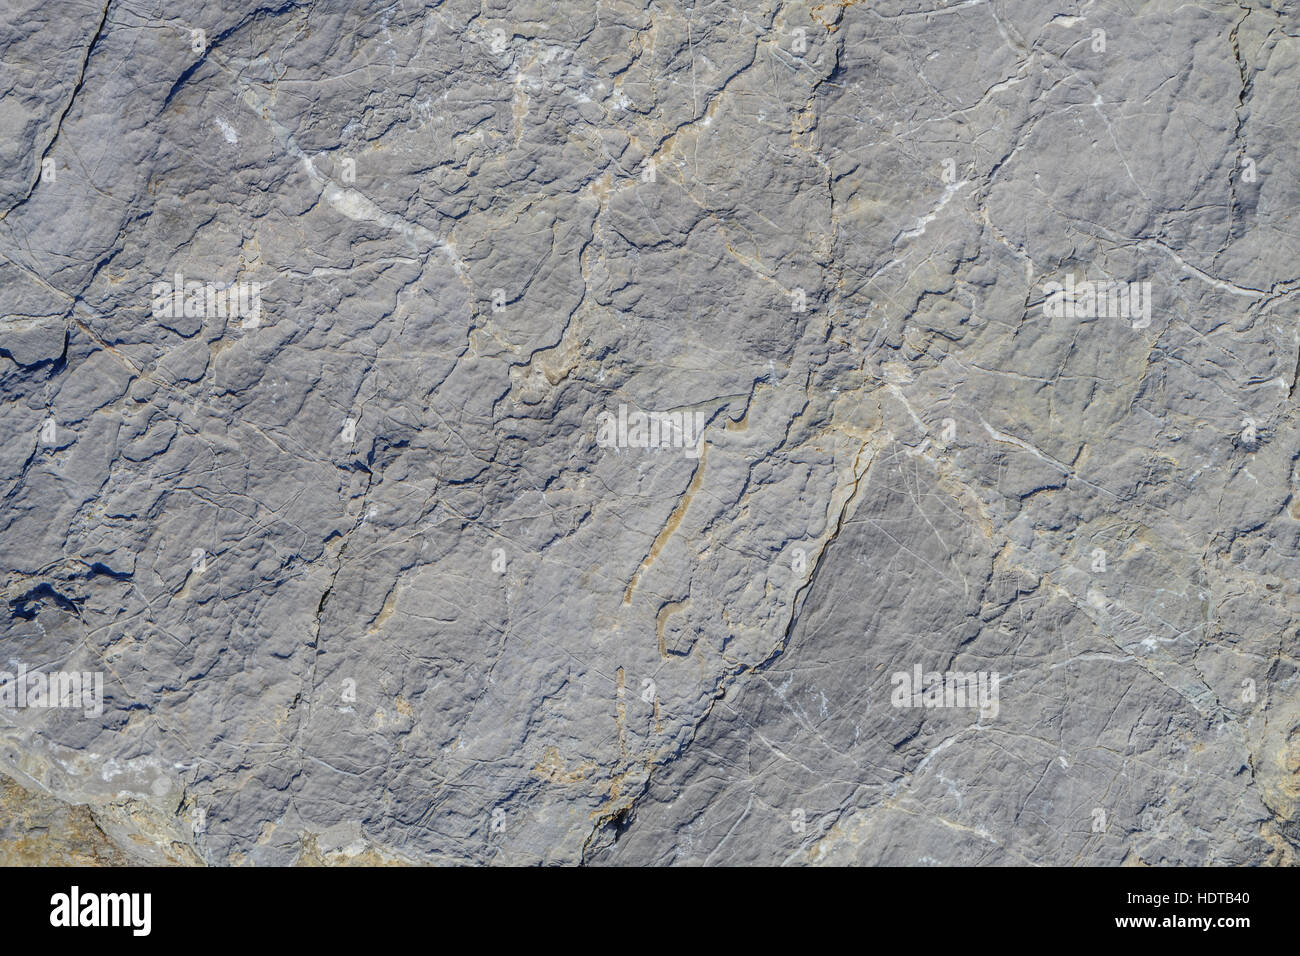 Graue Fläche aus Kalkstein, korrodiert und mit Adern sichtbar. Stockfoto